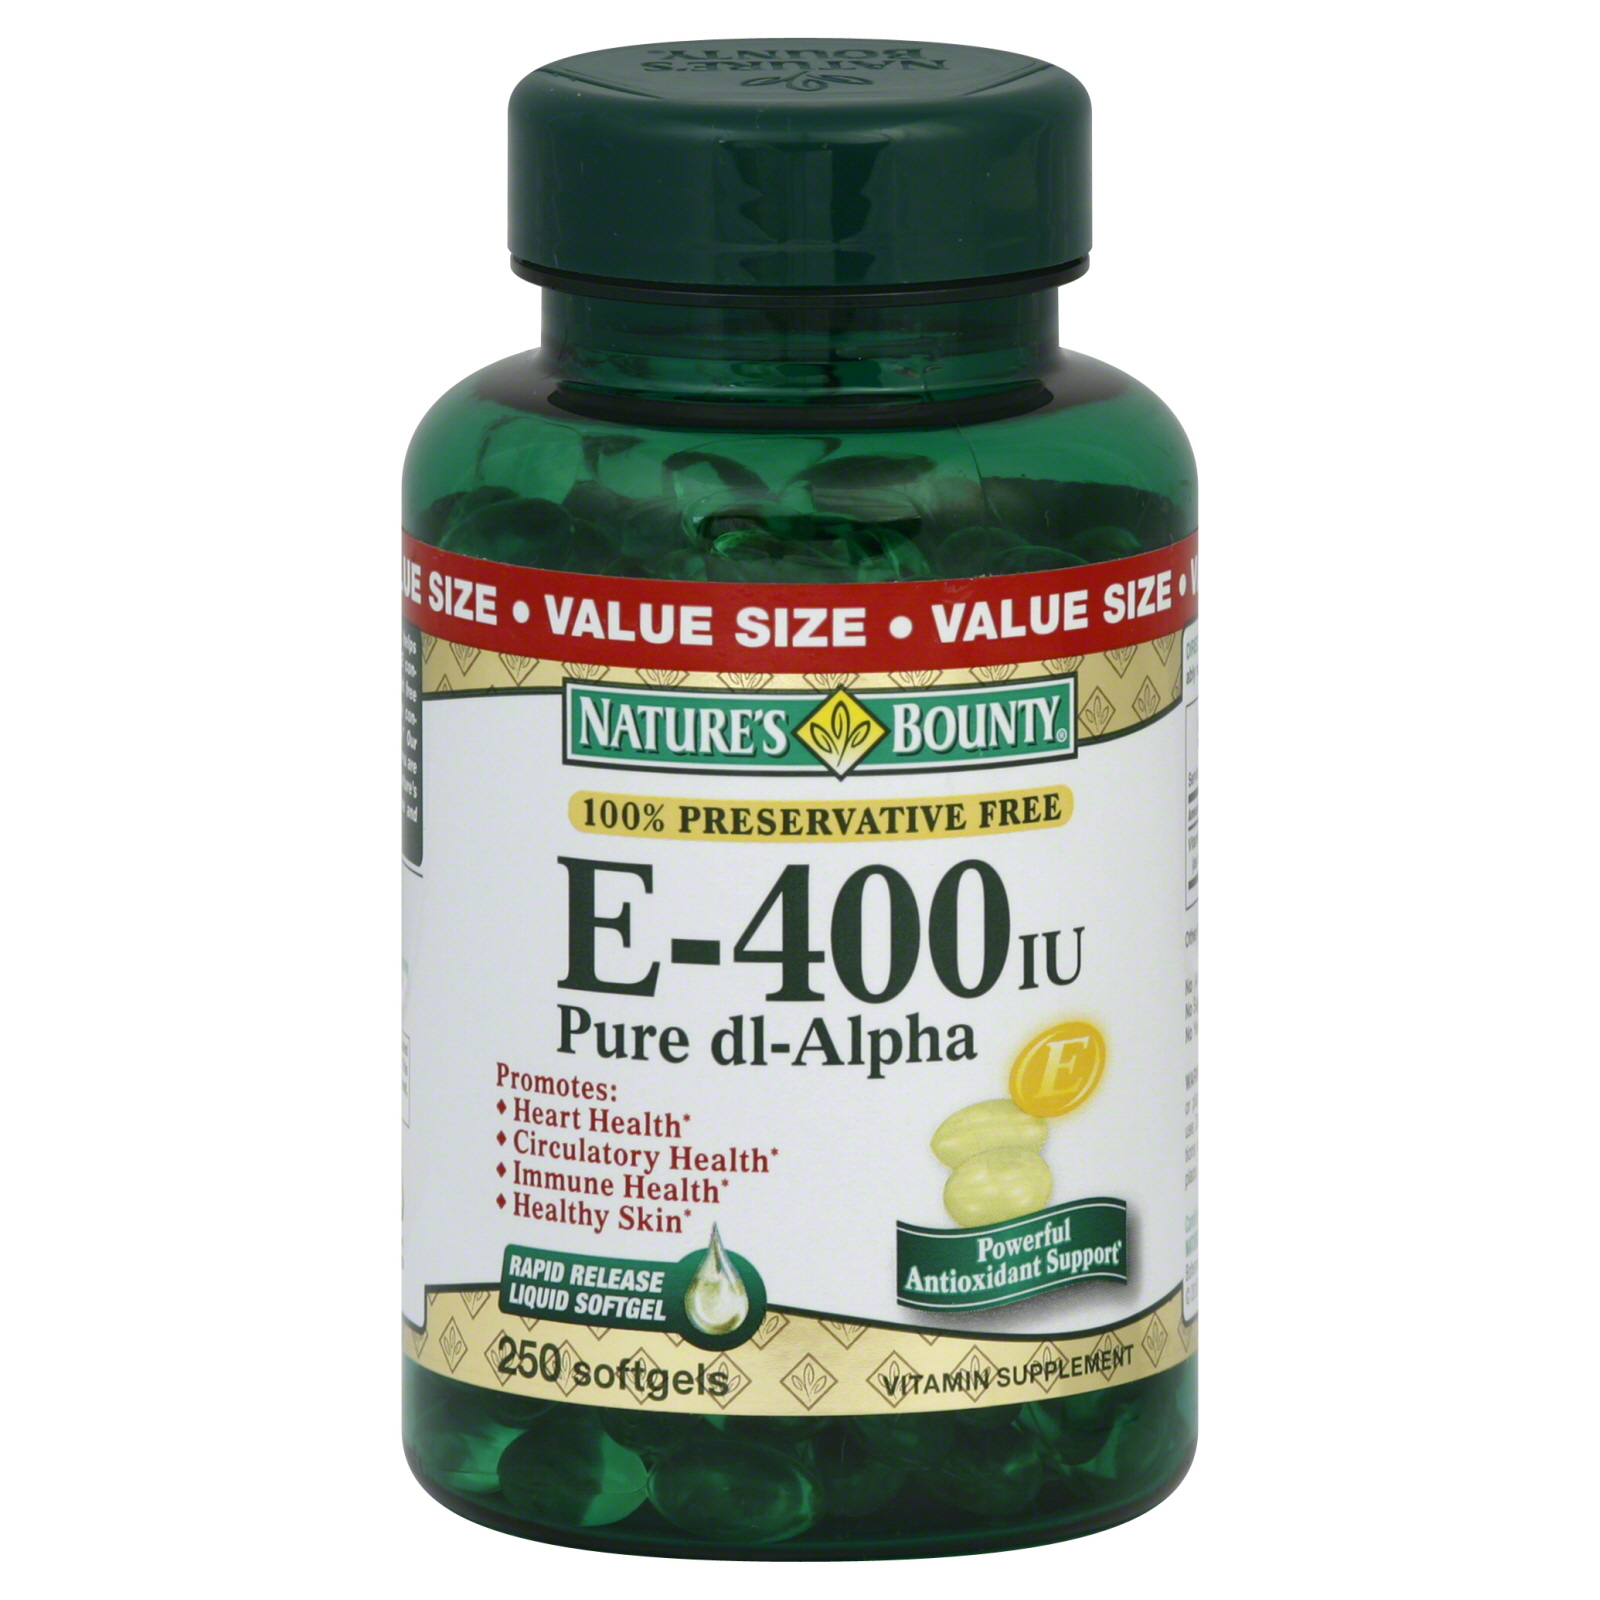 Nature's Bounty Vitamin E, Pure Dl-Alpha, 400 IU, Softgels, 250 softgels